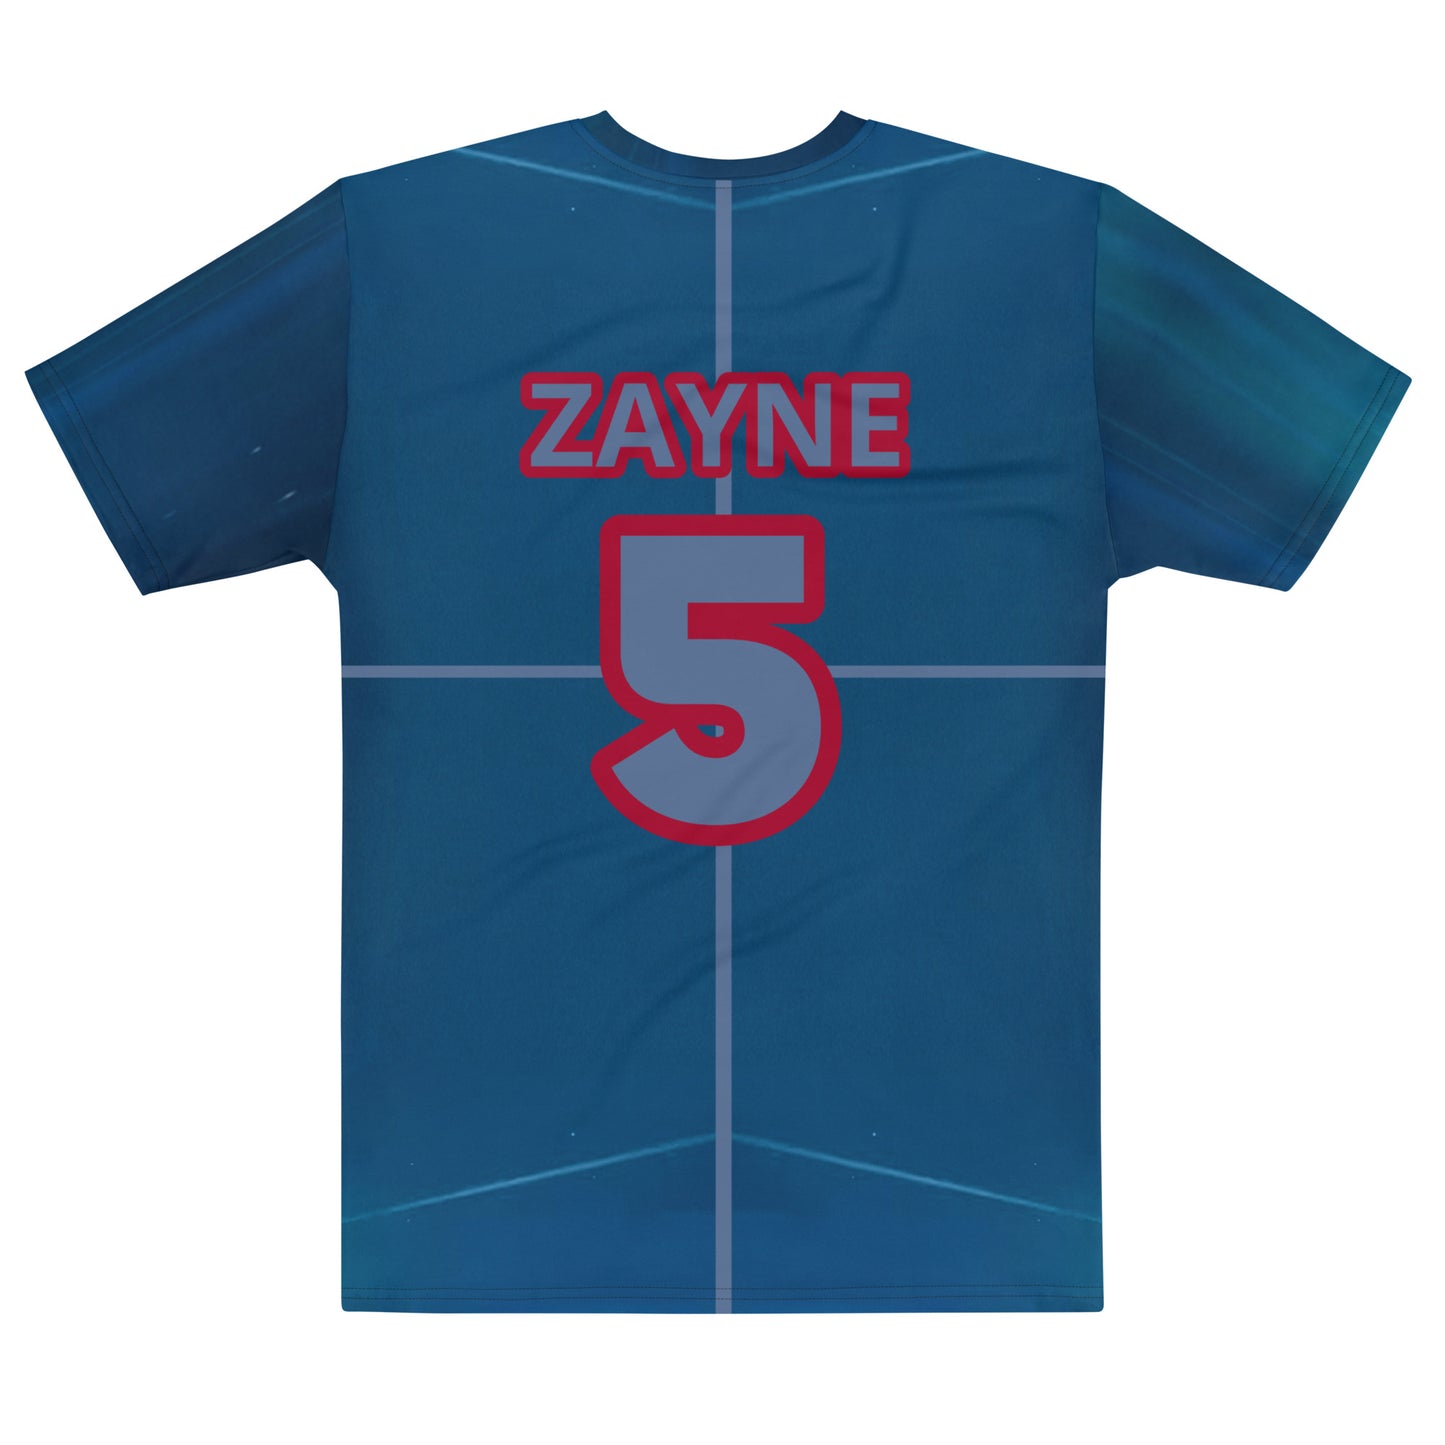 ZAYNE's Birthday t-shirt